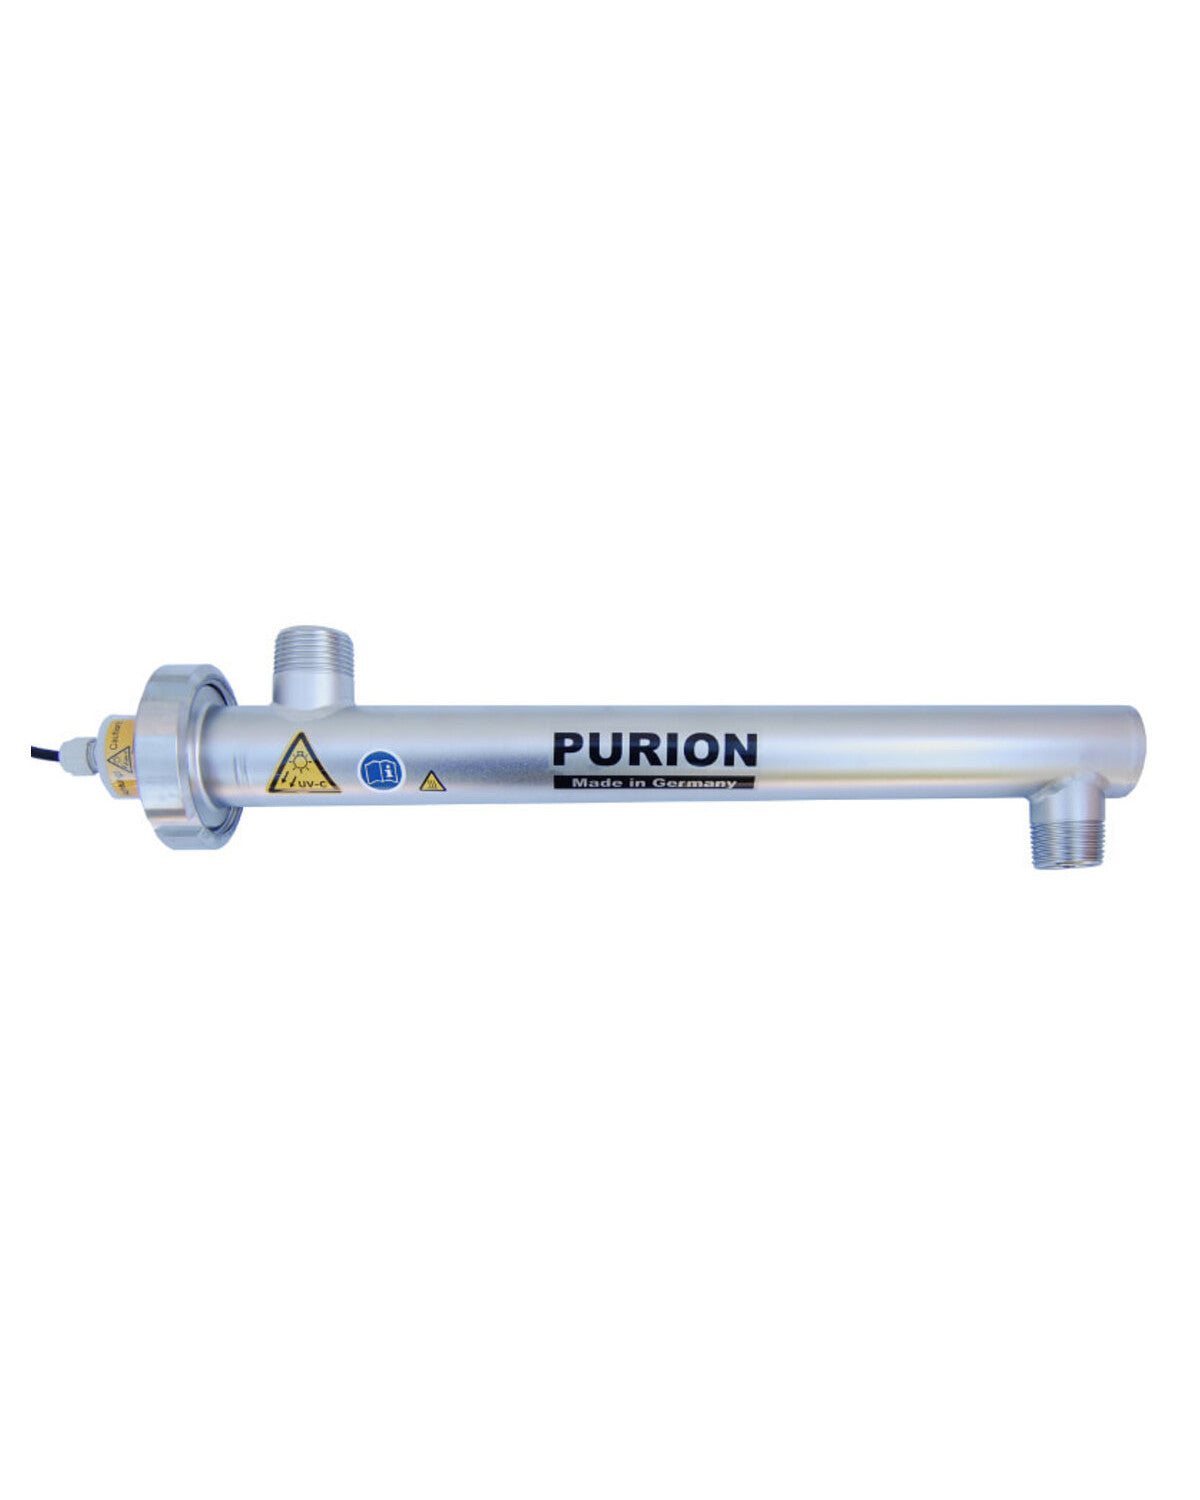 Verbessern Sie die Qualität Ihres Trinkwassers mit der fortschrittlichen Desinfektionstechnologie PURION 1000 12/24 V DC OPD der PURION GmbH.